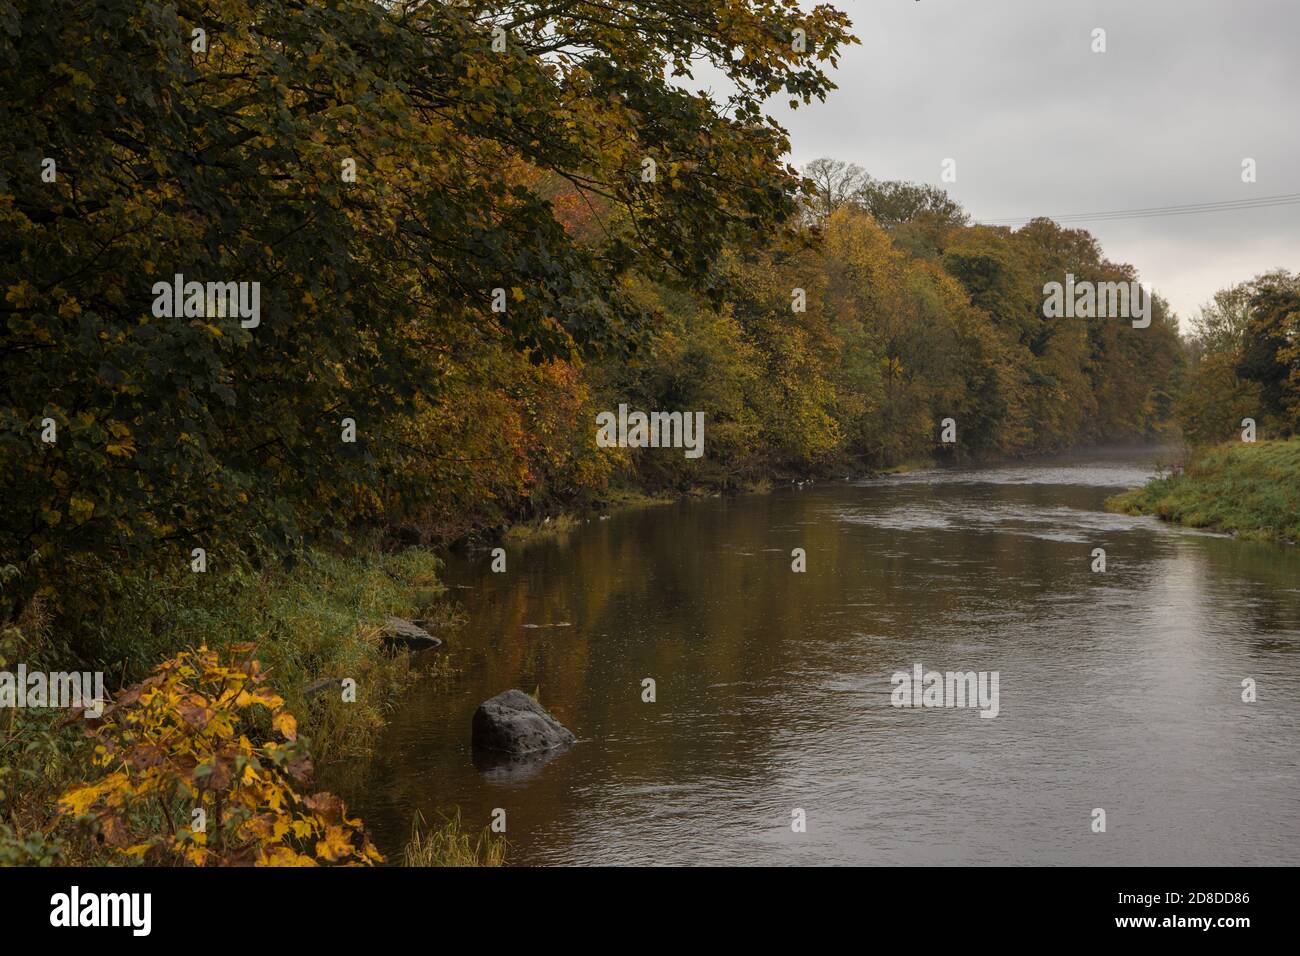 Couleurs dorées chaudes en automne sur la rive du ribble à Clitheroe. Feuilles d'automne colorées en automne Banque D'Images